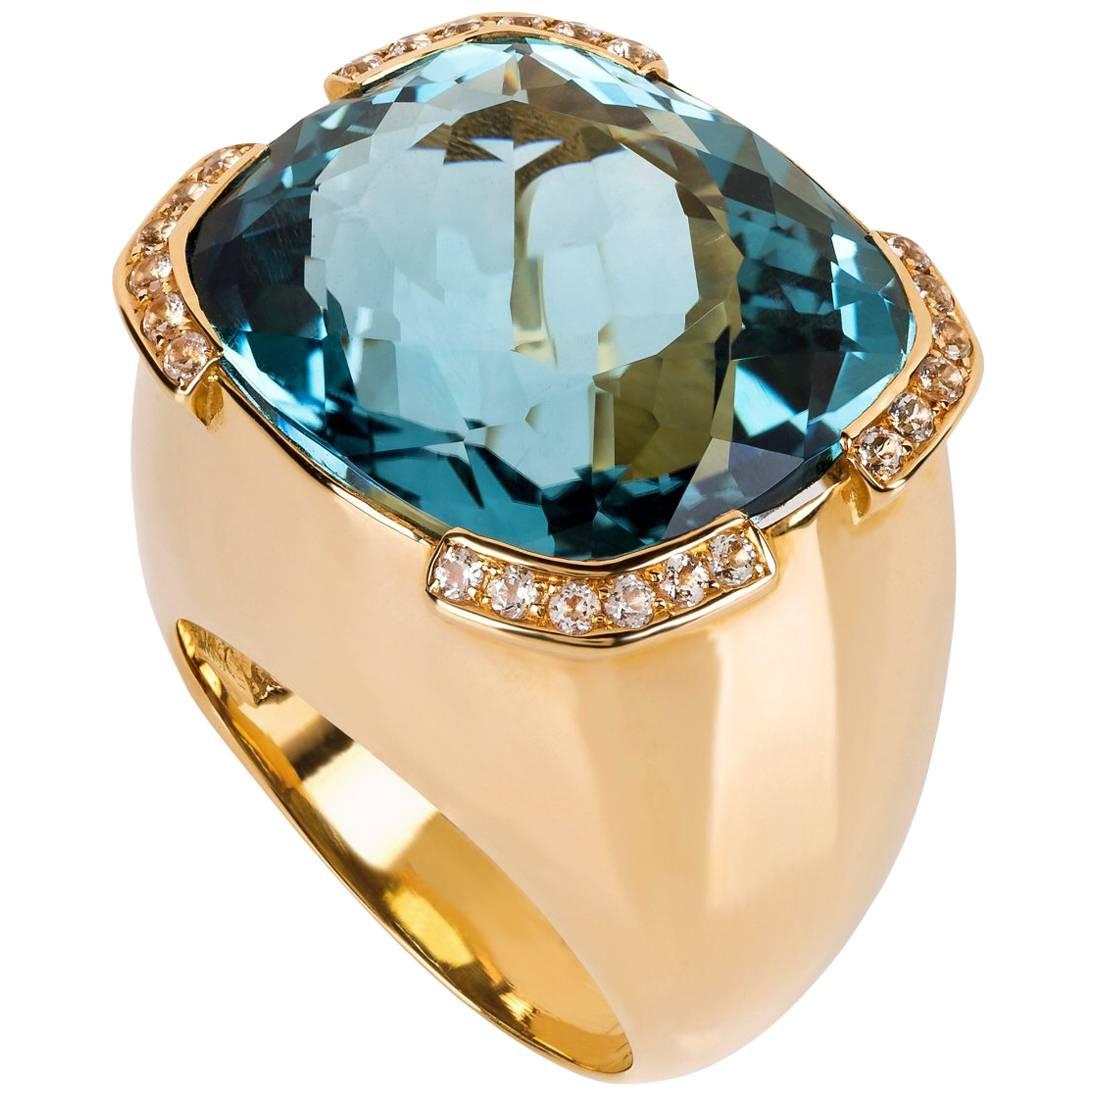  40 Carat Aquamarine Diamond Gold Ring For Sale